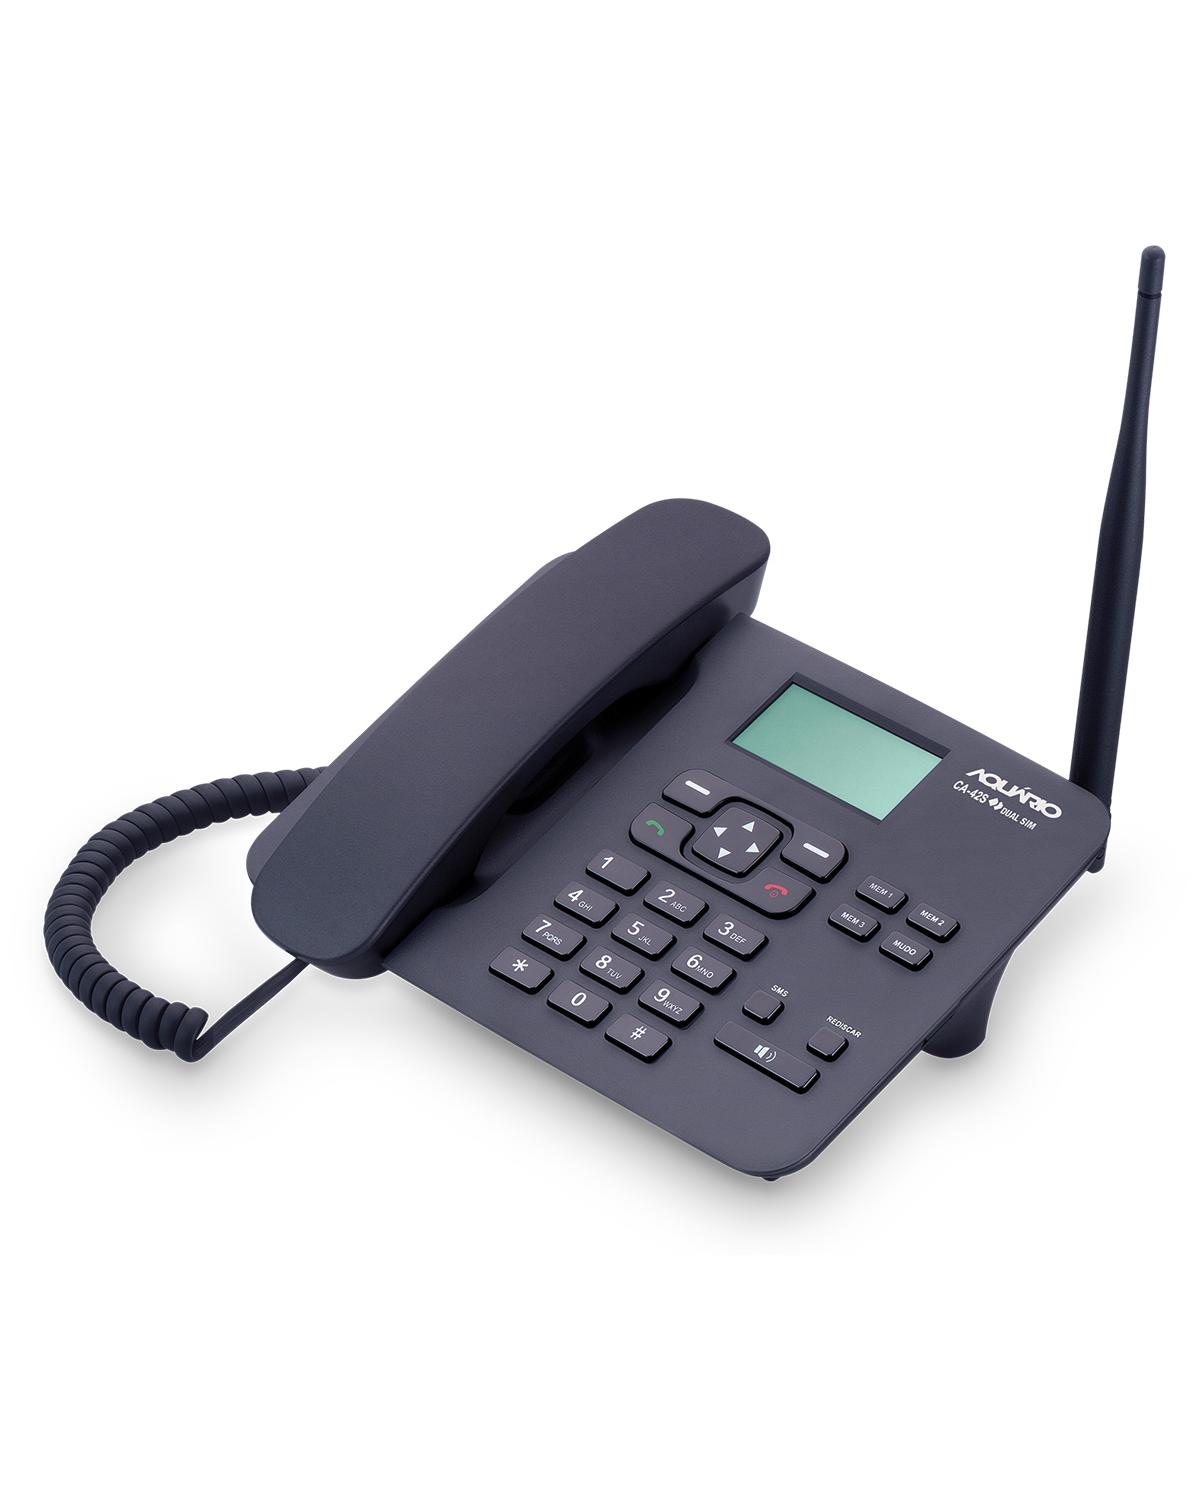 TELEFONE CELULAR RURAL FIXO DE MESA QUADRIBAND 850/900/1800/1900 MHZ  DUAL CHIP CA-42S